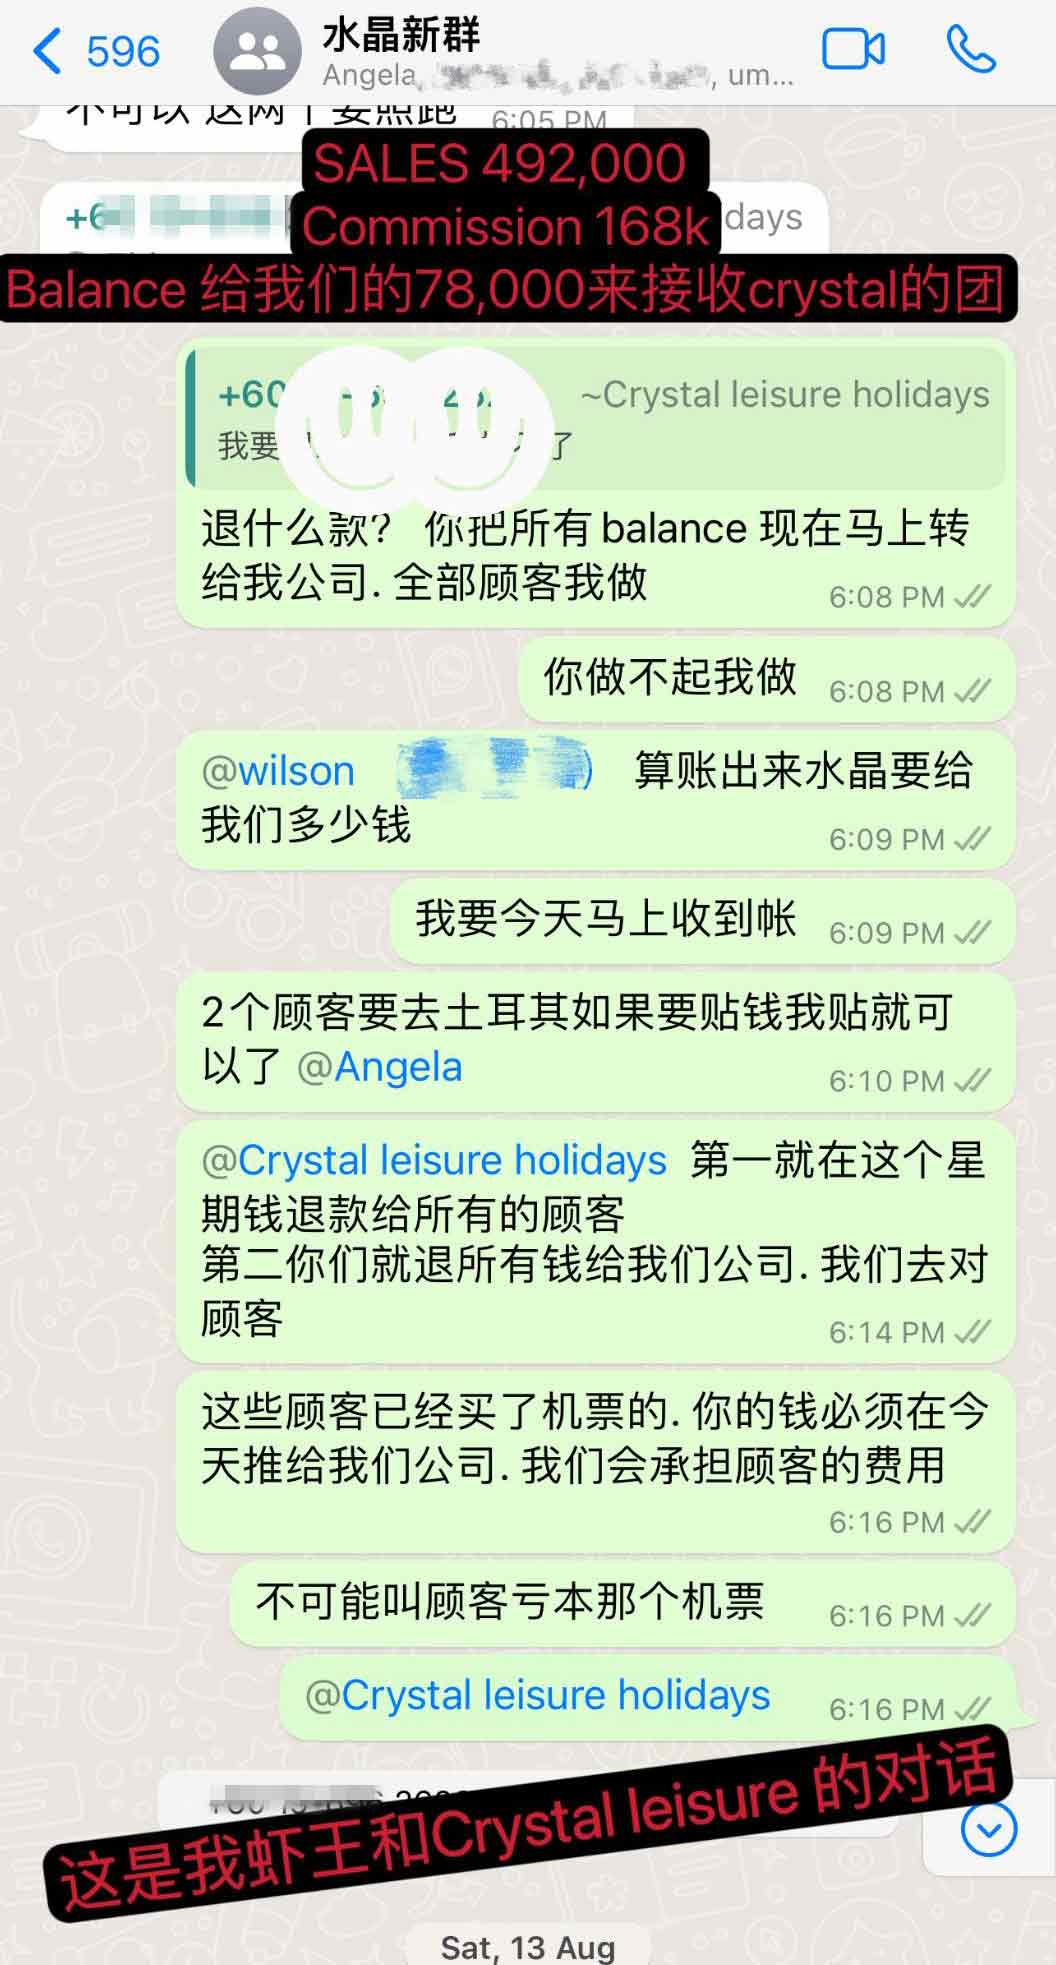 虾王公开他和水晶假期旅游公司之间的账目及对话内容截图。